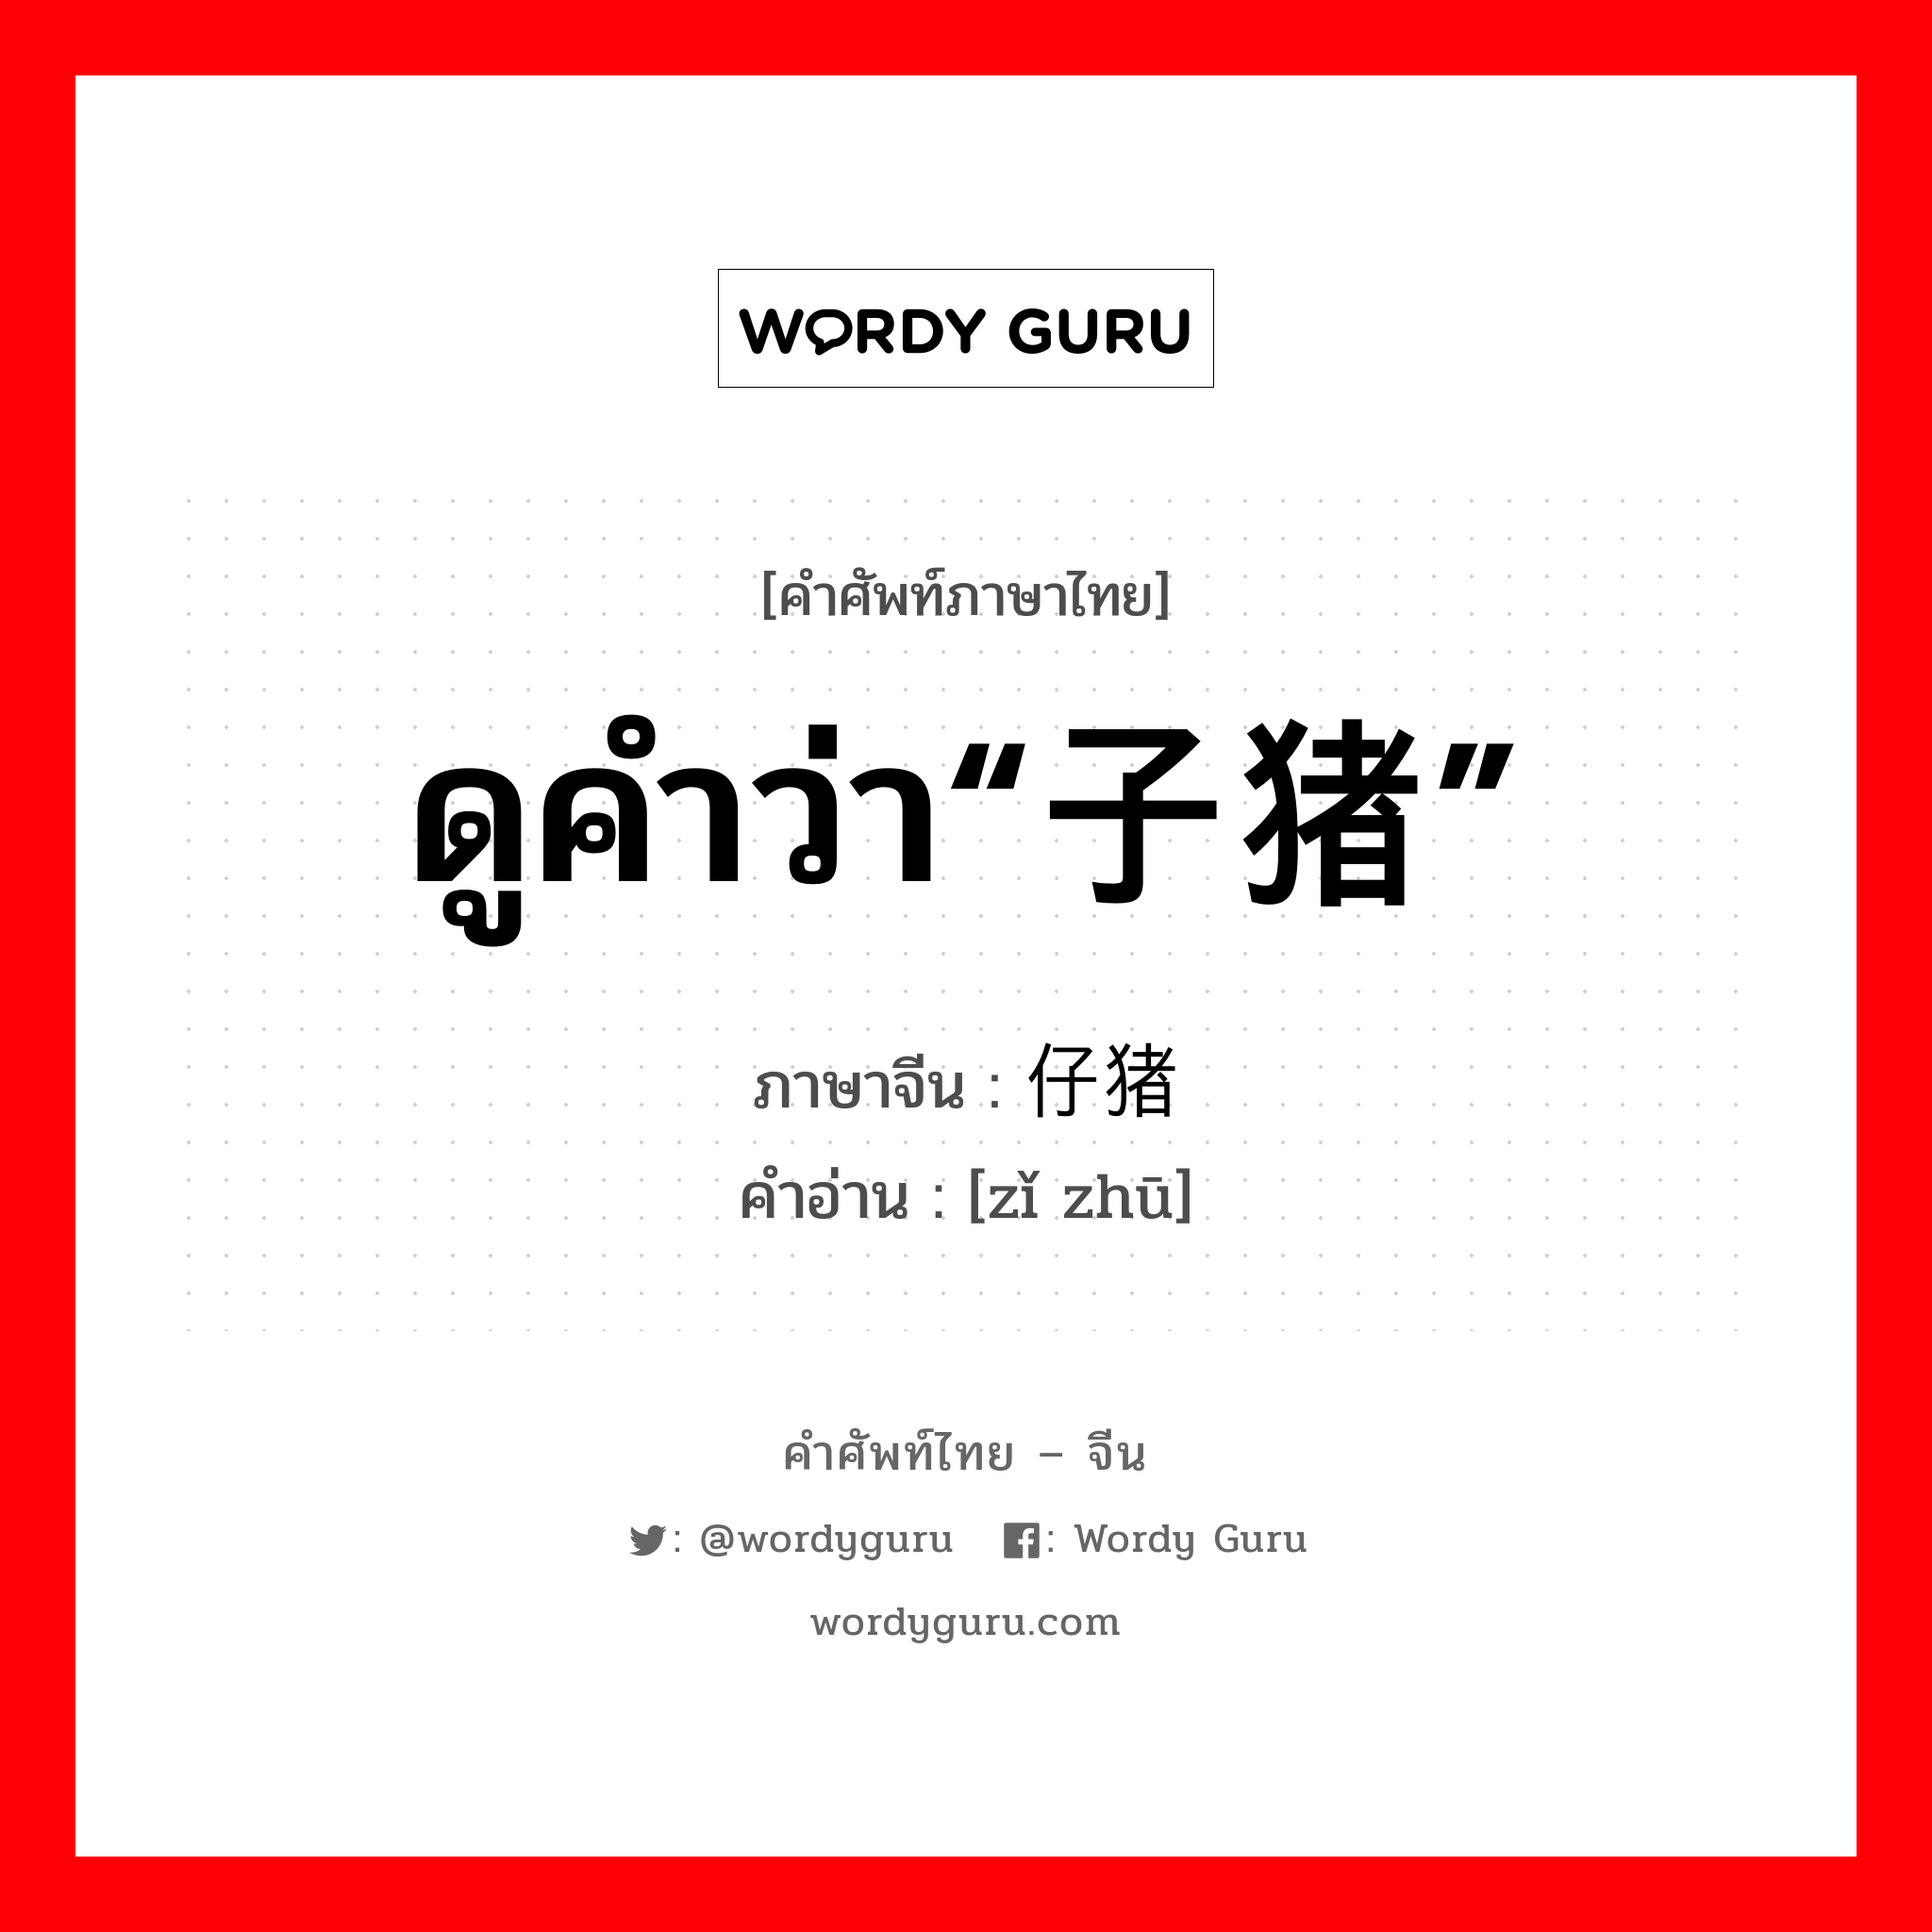 ดูคำว่า“子猪” ภาษาจีนคืออะไร, คำศัพท์ภาษาไทย - จีน ดูคำว่า“子猪” ภาษาจีน 仔猪 คำอ่าน [zǐ zhū]